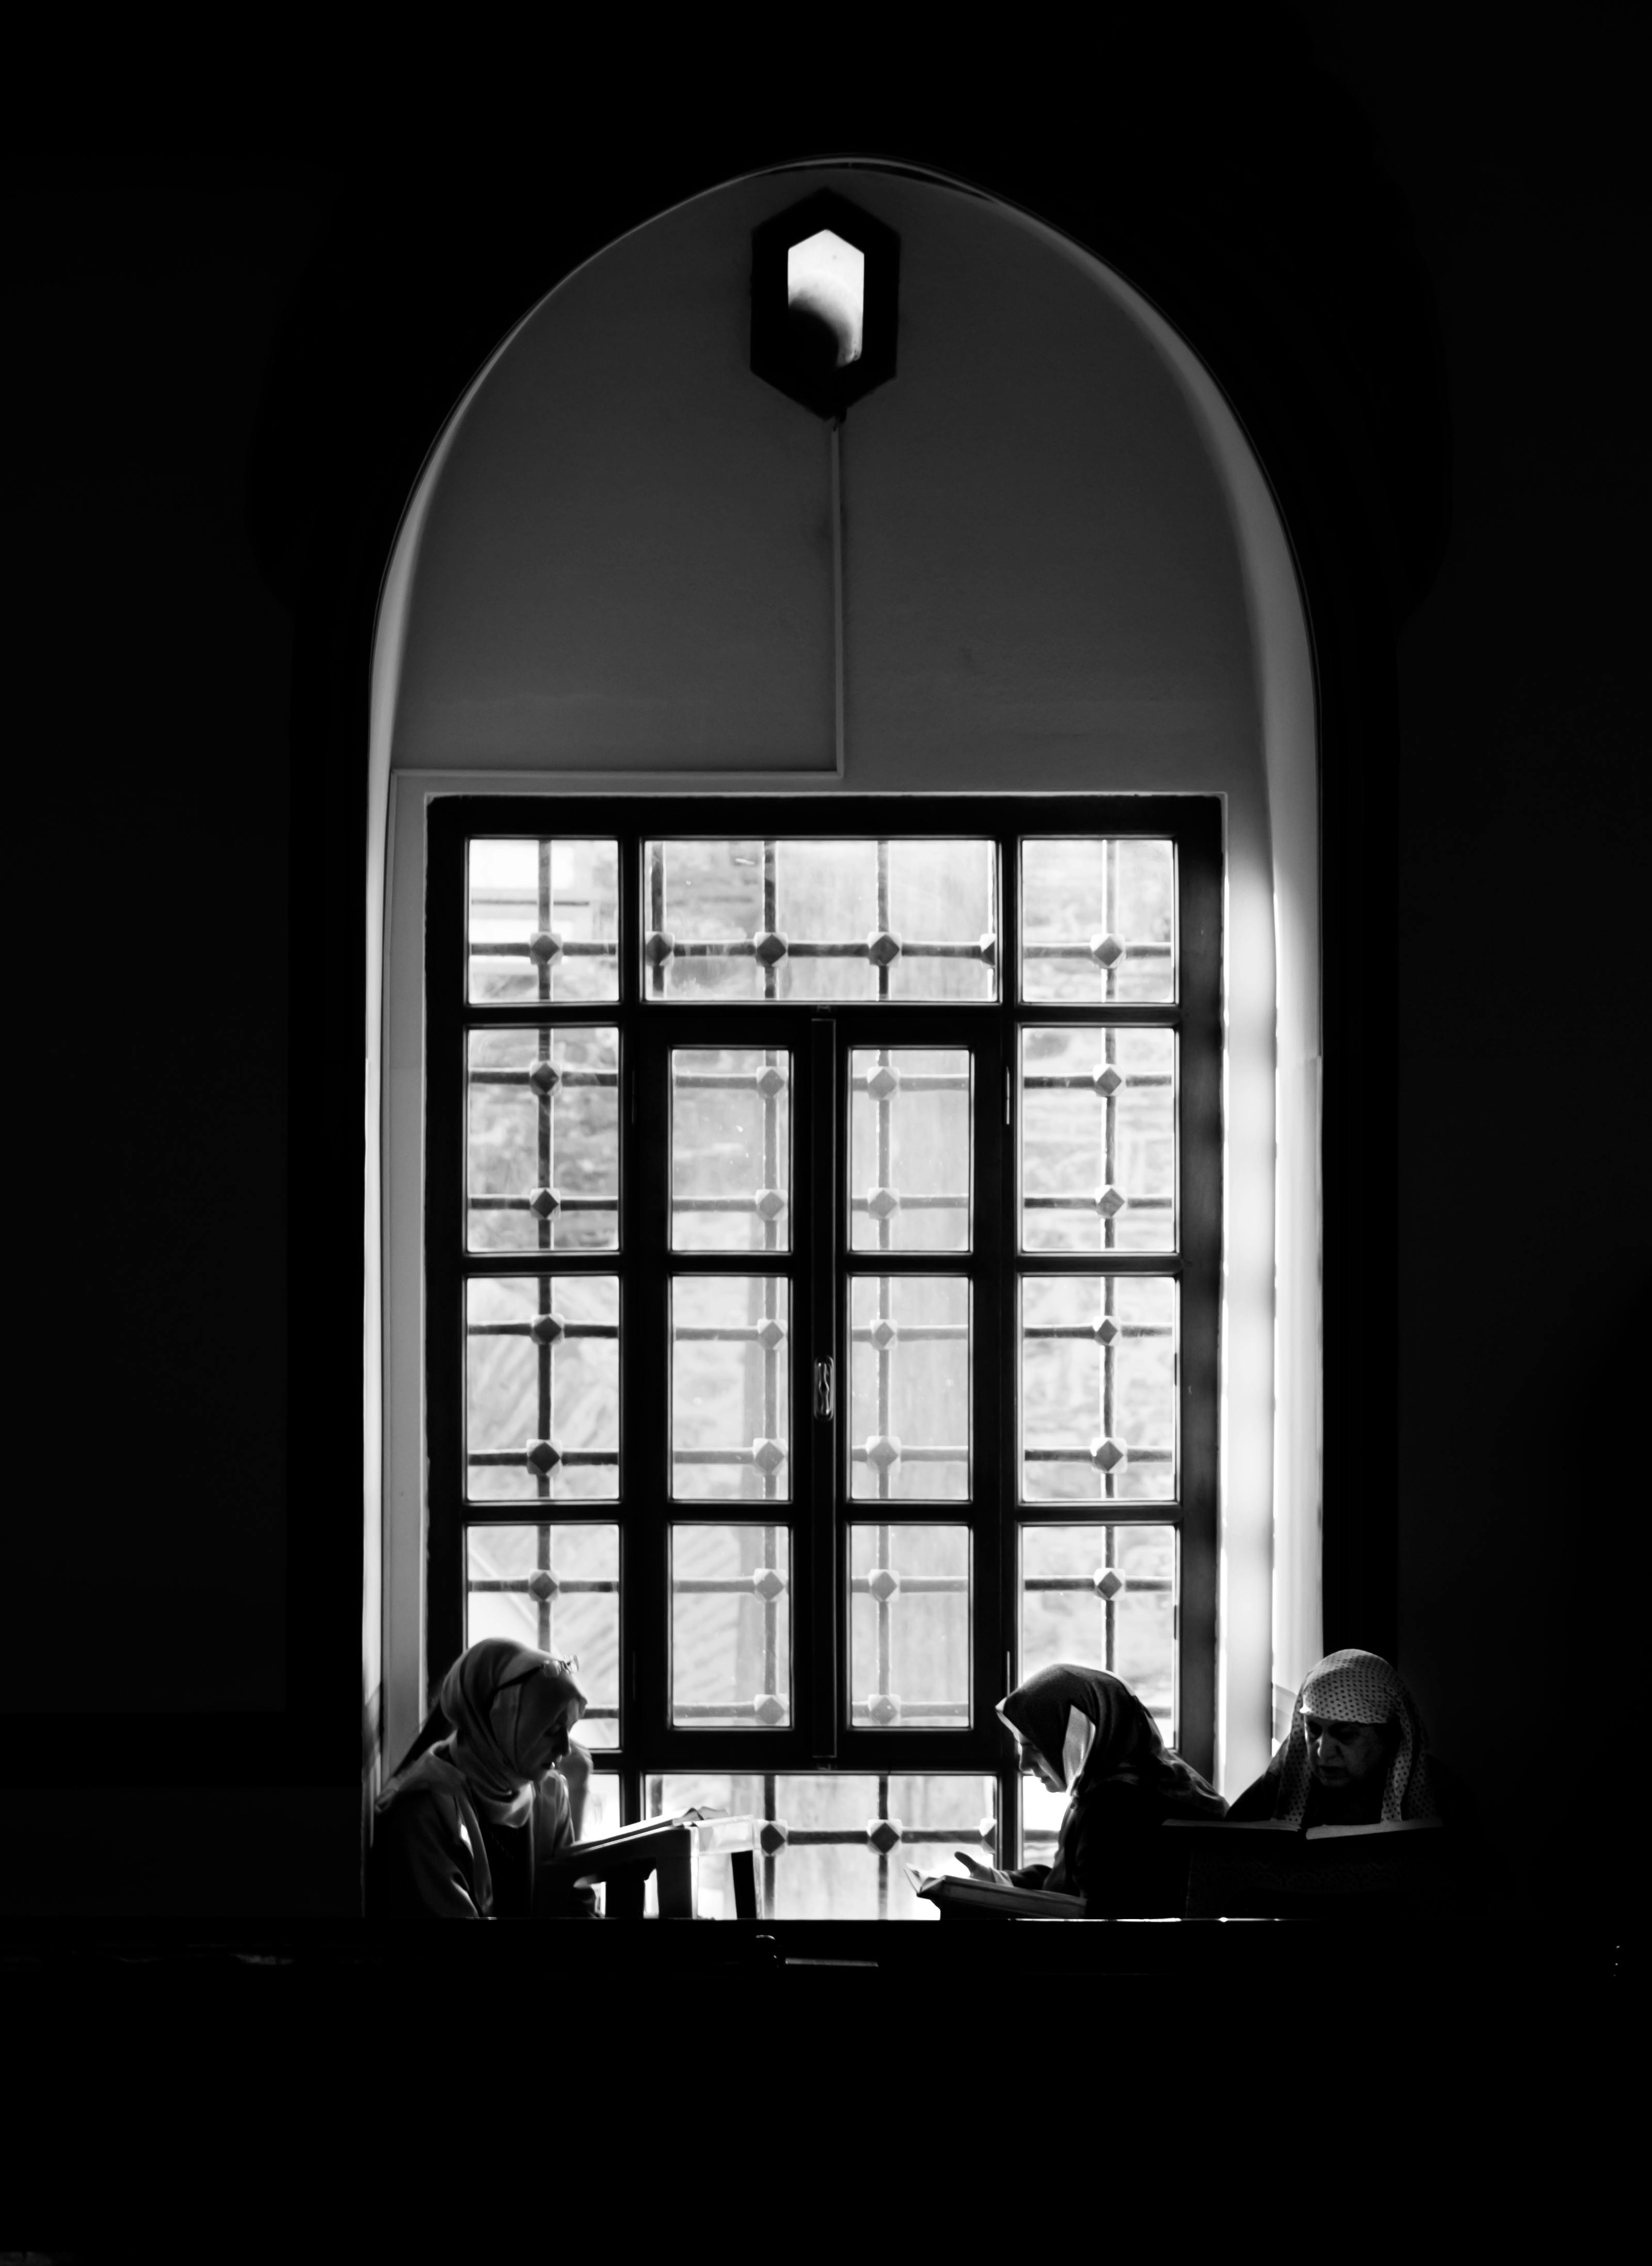 Nuns at the table. | Photo: Pexels